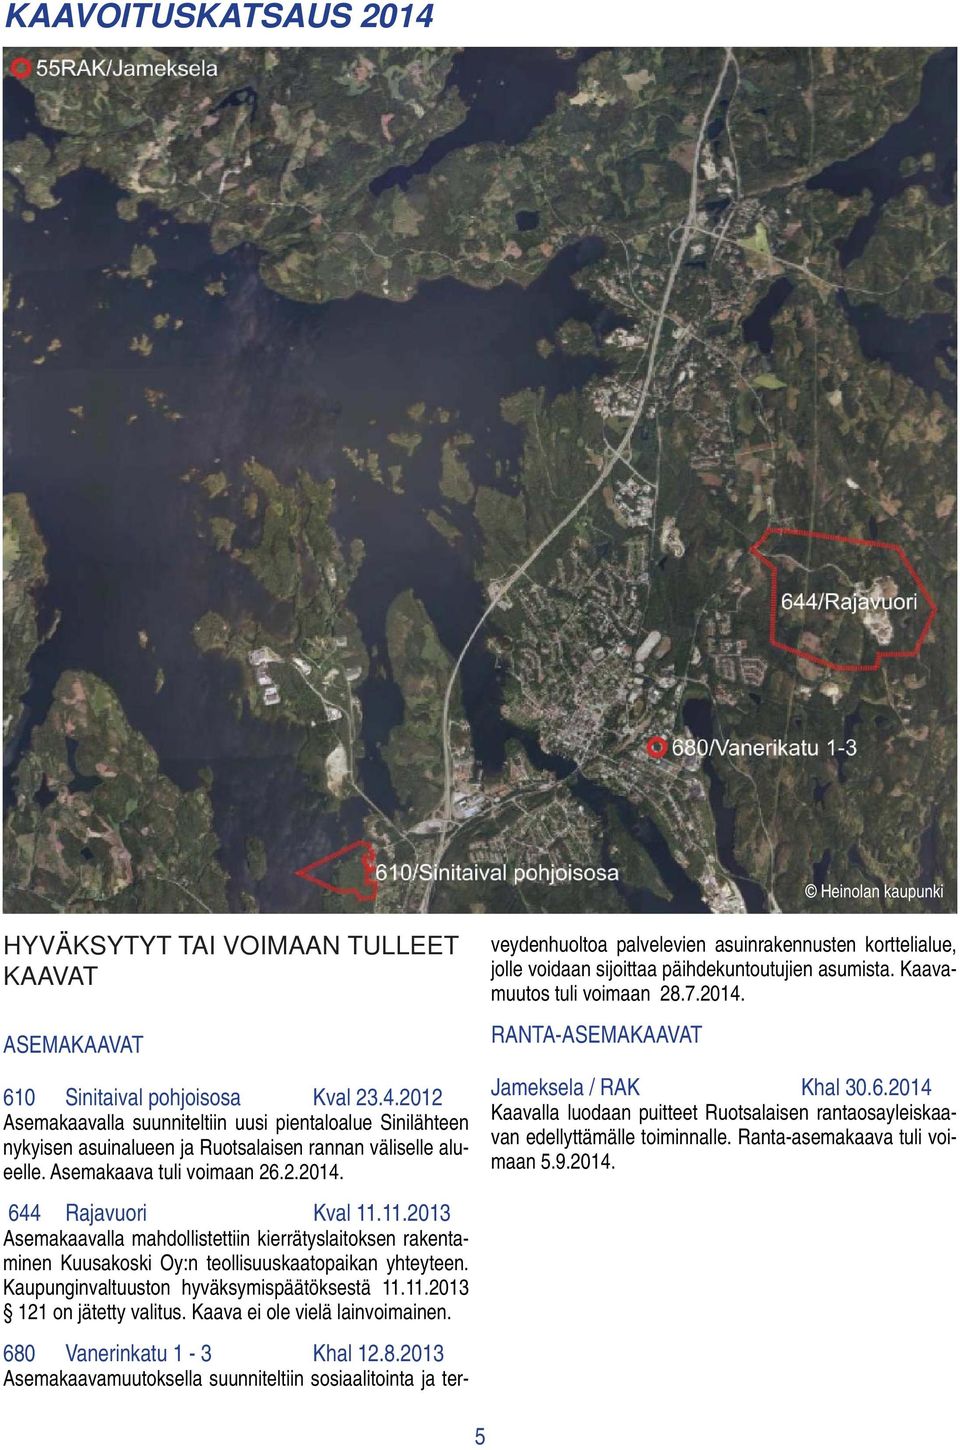 11.2013 Asemakaavalla mahdollistettiin kierrätyslaitoksen rakentaminen Kuusakoski Oy:n teollisuuskaatopaikan yhteyteen. Kaupunginvaltuuston hyväksymispäätöksestä 11.11.2013 121 on jätetty valitus.